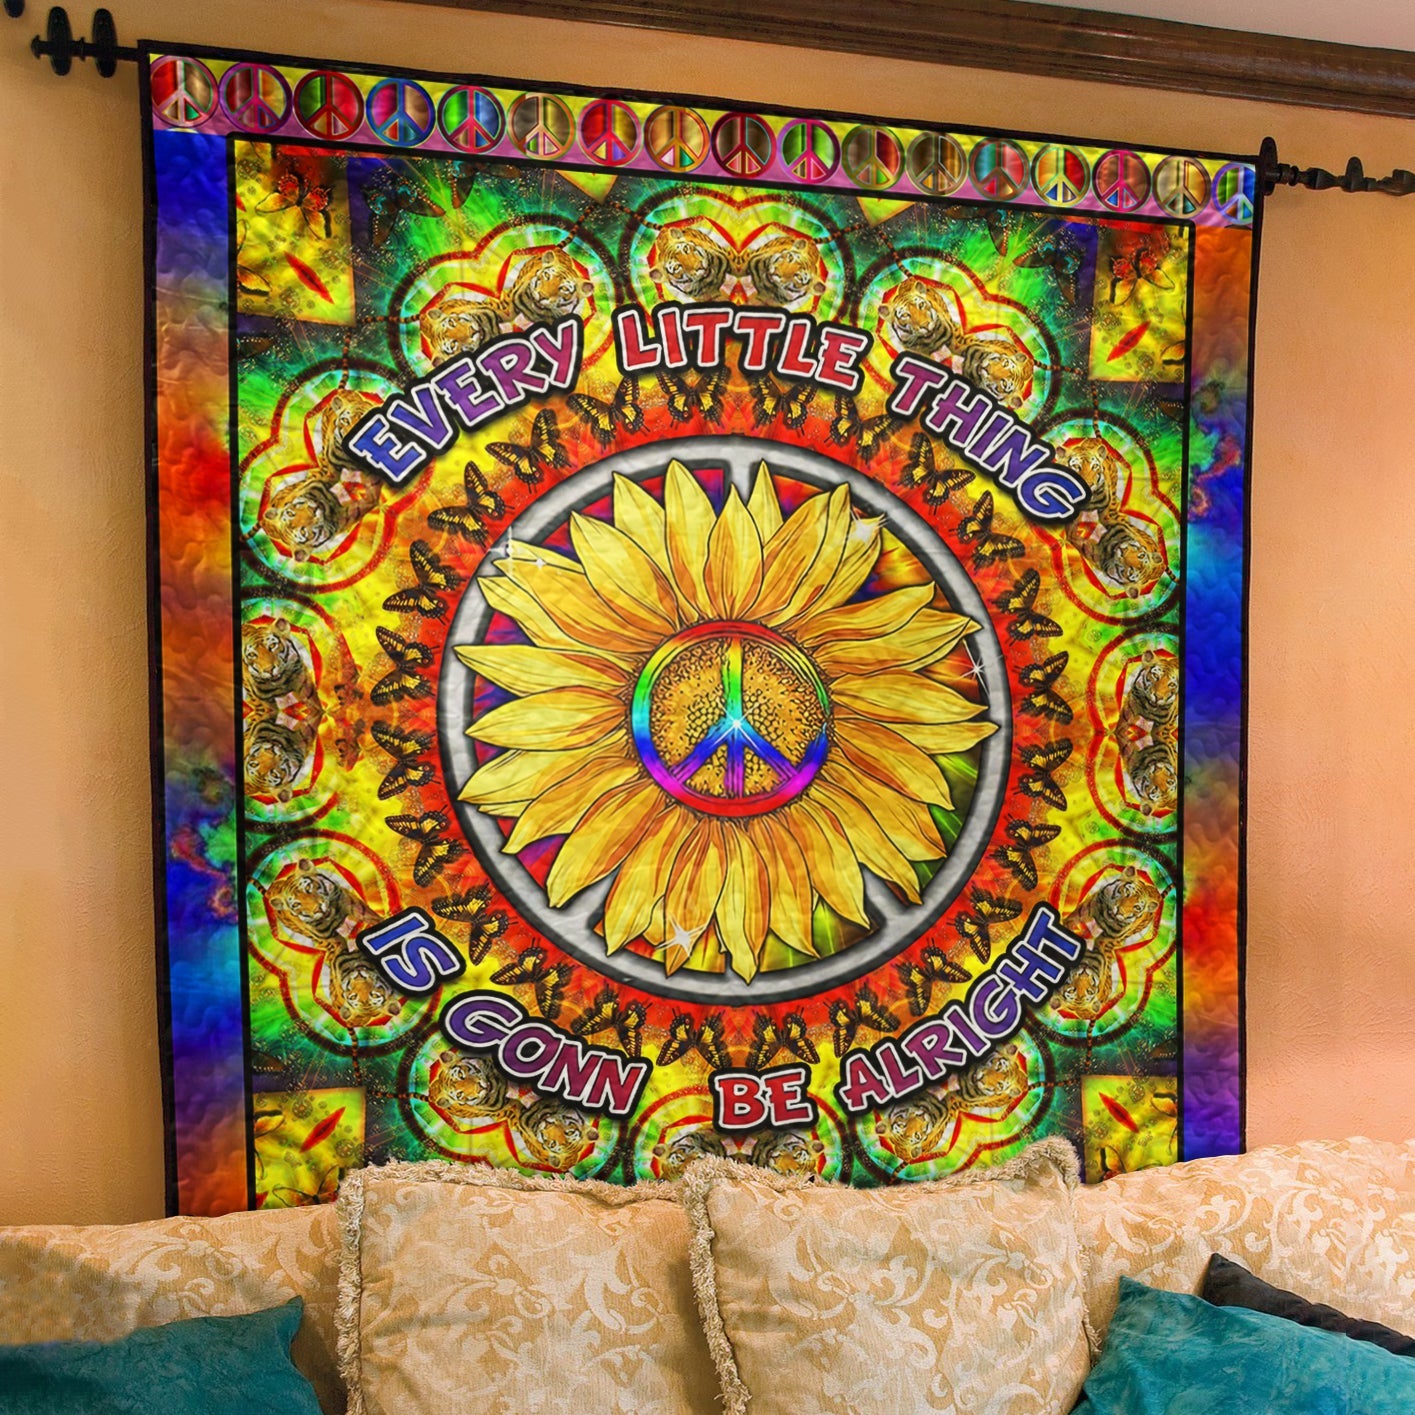 Hippie Sunflower Quilt Blanket TL050704Y